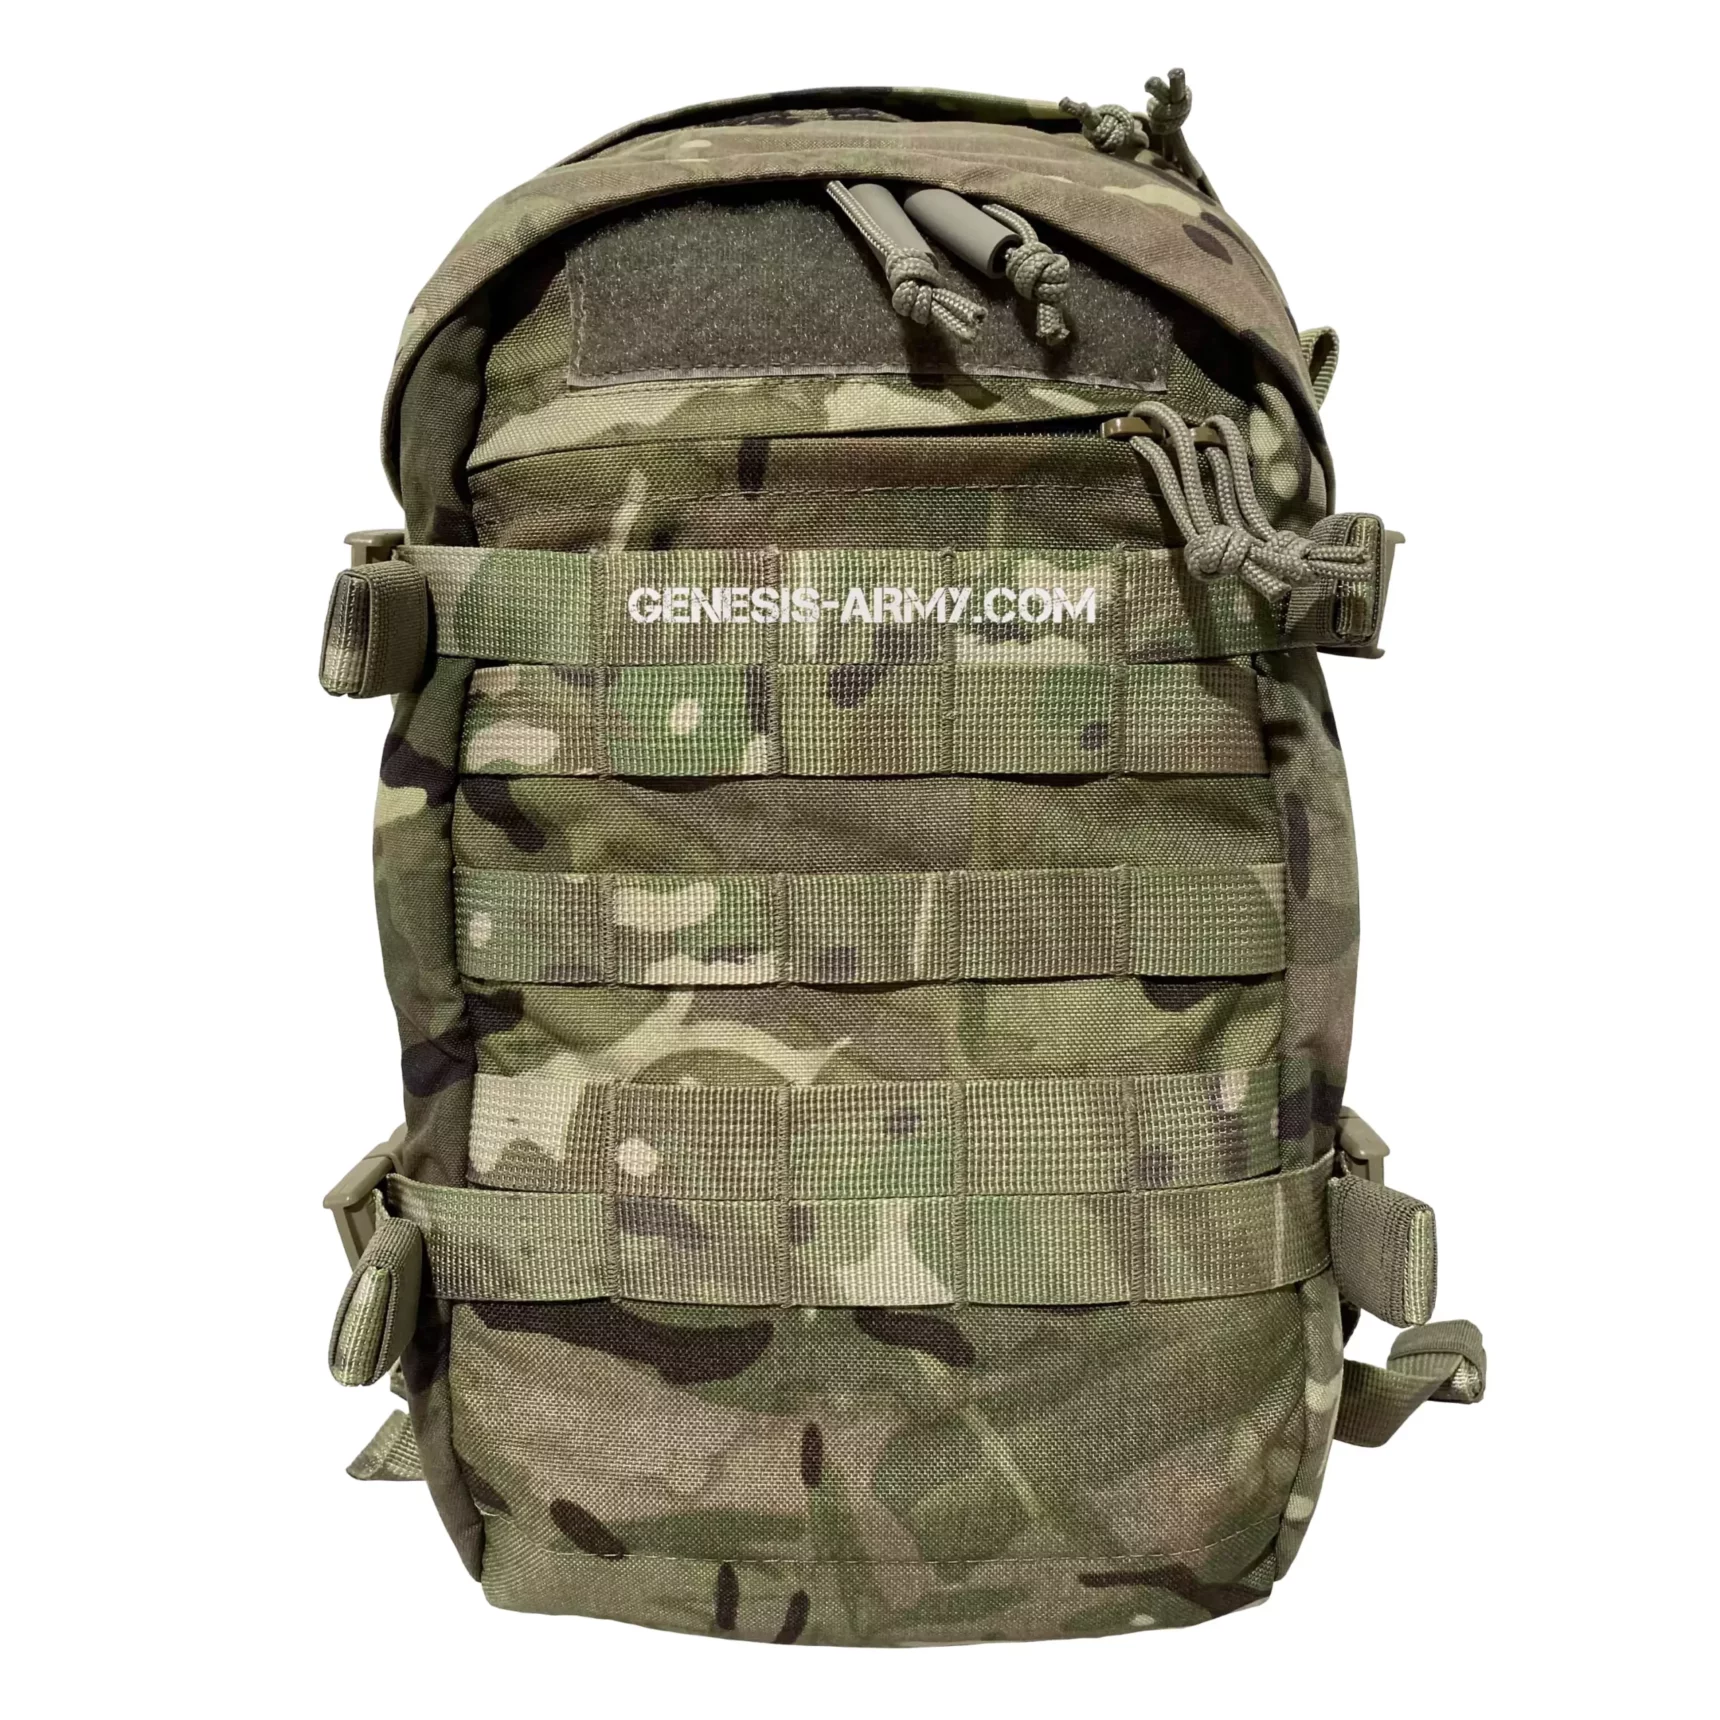 Virtus 17l Backpack daysack rucksack MTP